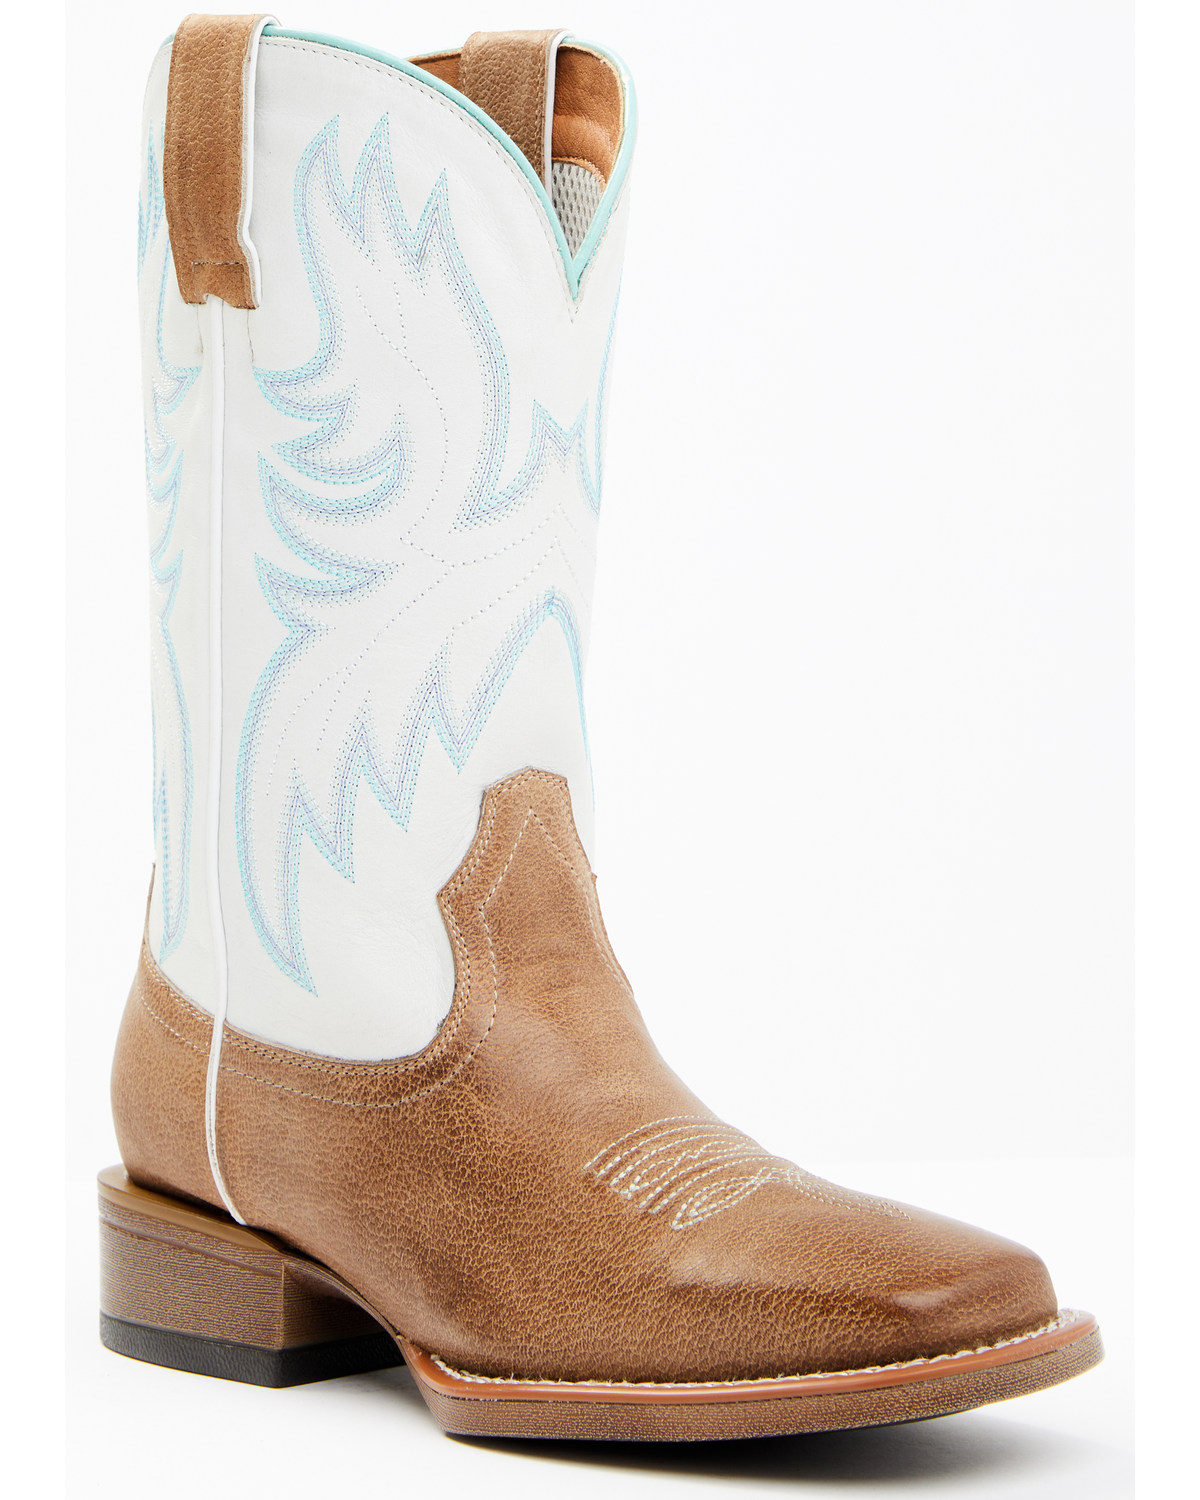 Shyanne Stryde® Women's Western Performance Boots